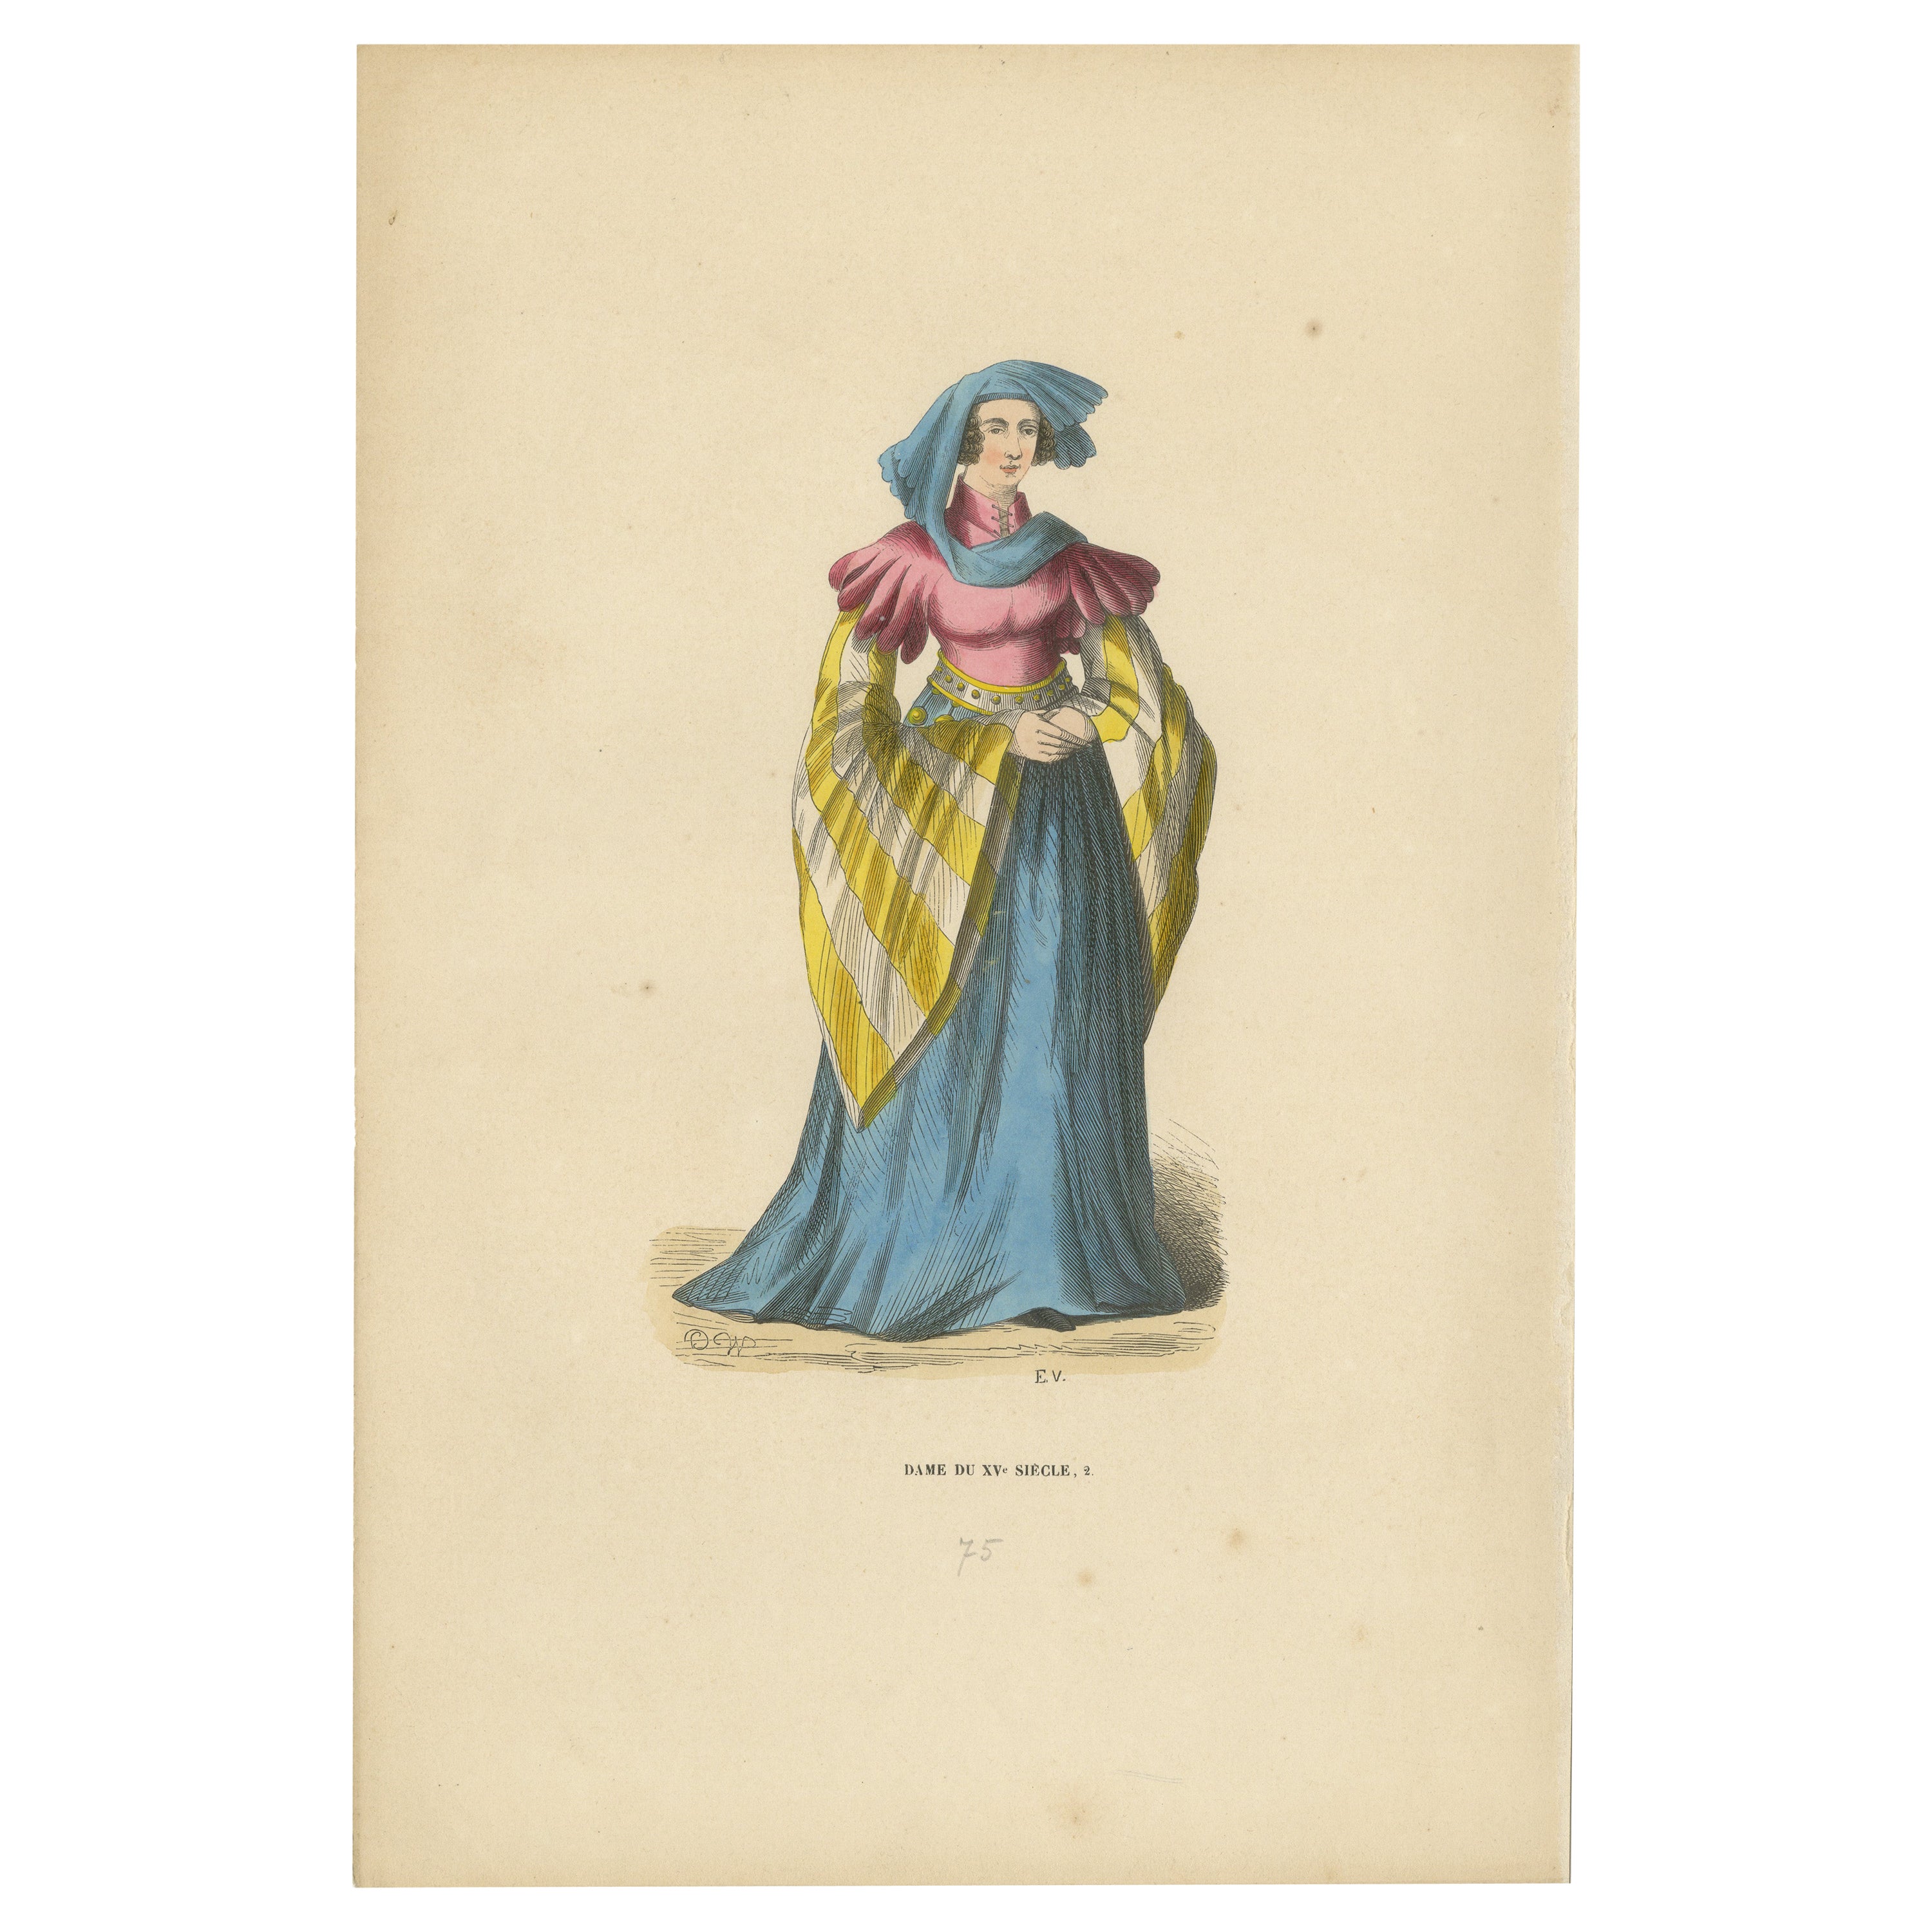 Eleganz des 15. Jahrhunderts: The Lady of the Court, gestochen und veröffentlicht 1847